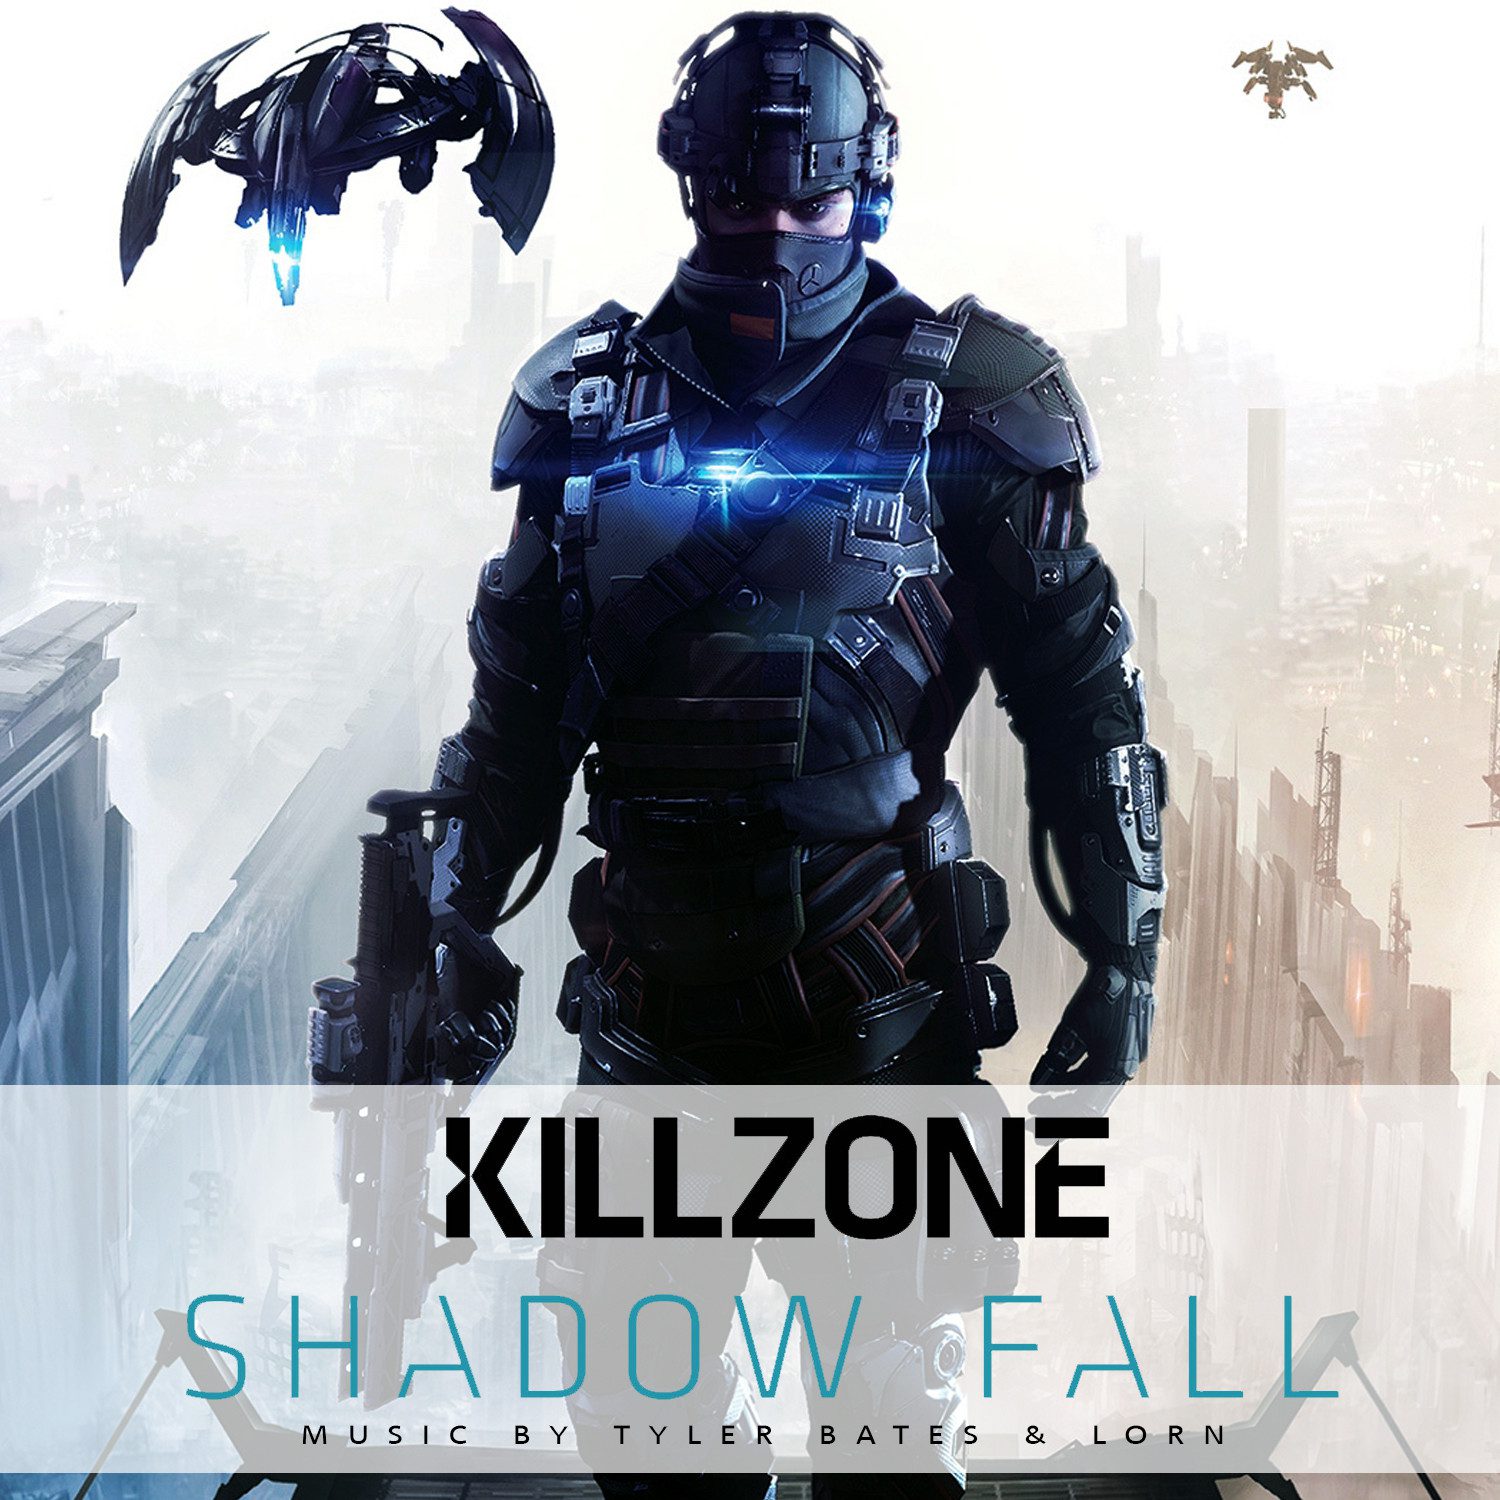 Killzone Shadow Fall – Entscheide das Schicksal einer zerrissenen Welt im explosivsten Kampf aller Zeiten!